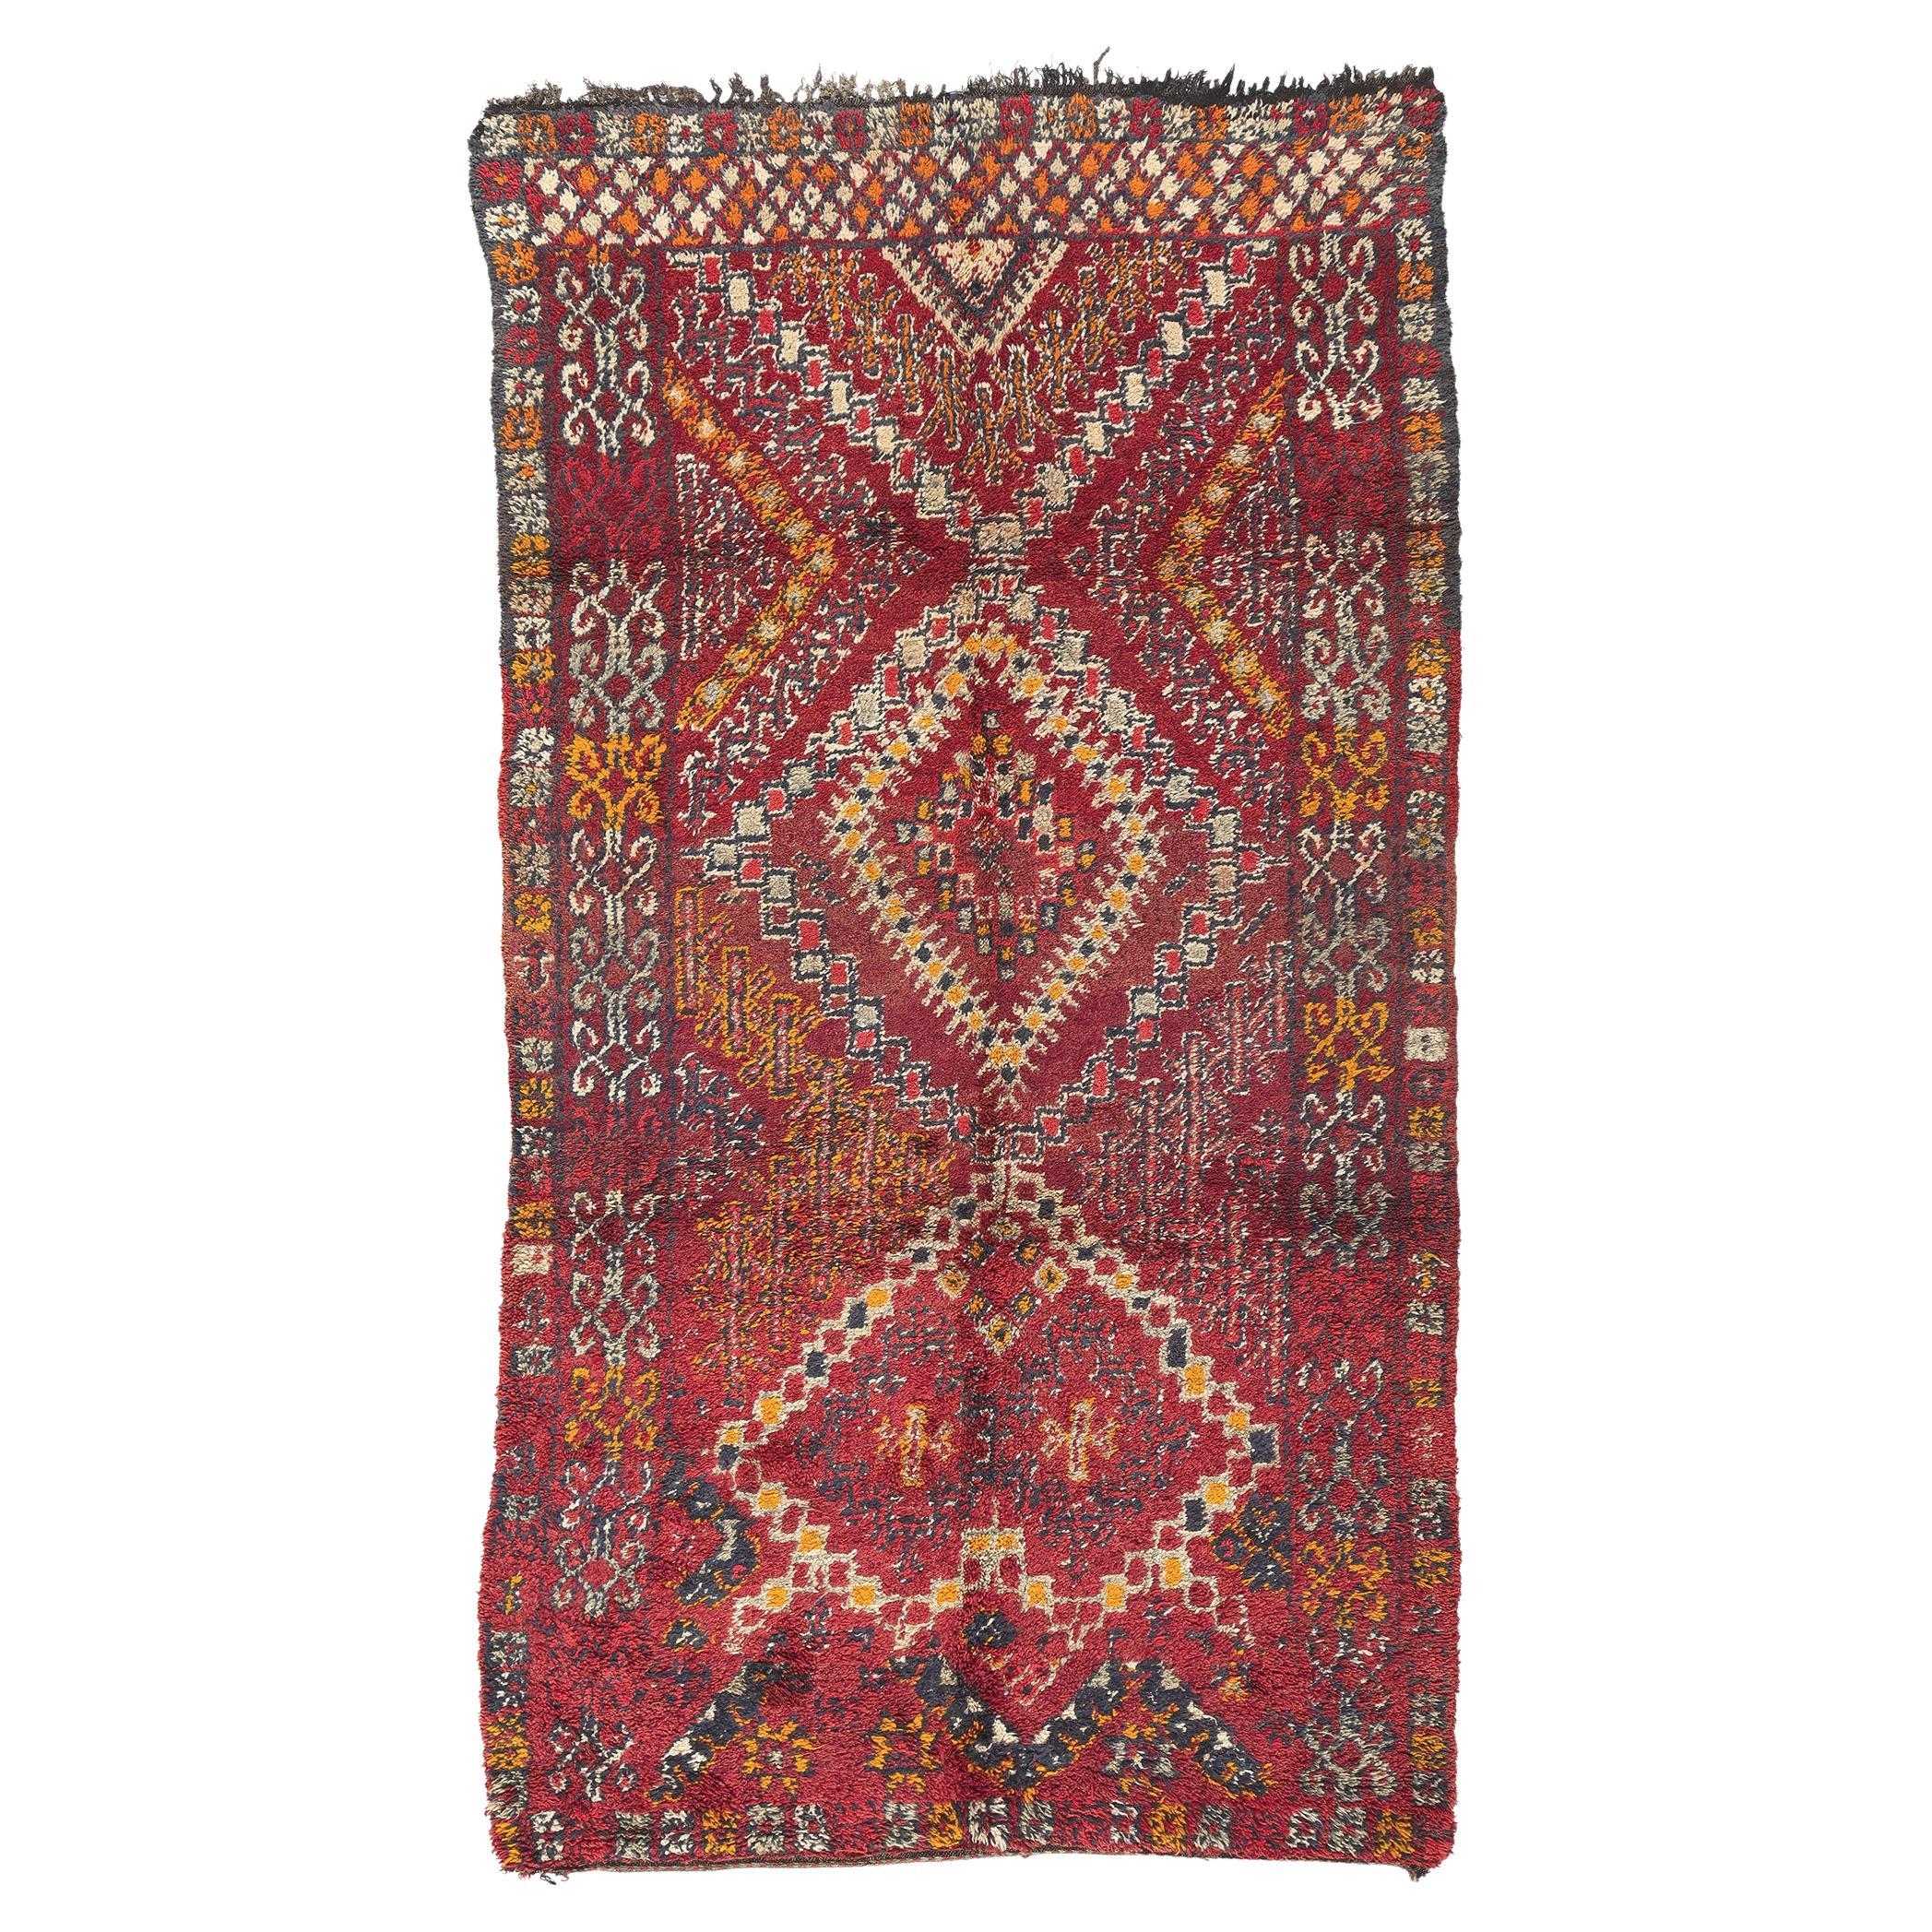 Marokkanischer Beni MGuild-Teppich im Vintage-Stil, Stammeskunst-Enchantment trifft auf Midcentury Modern